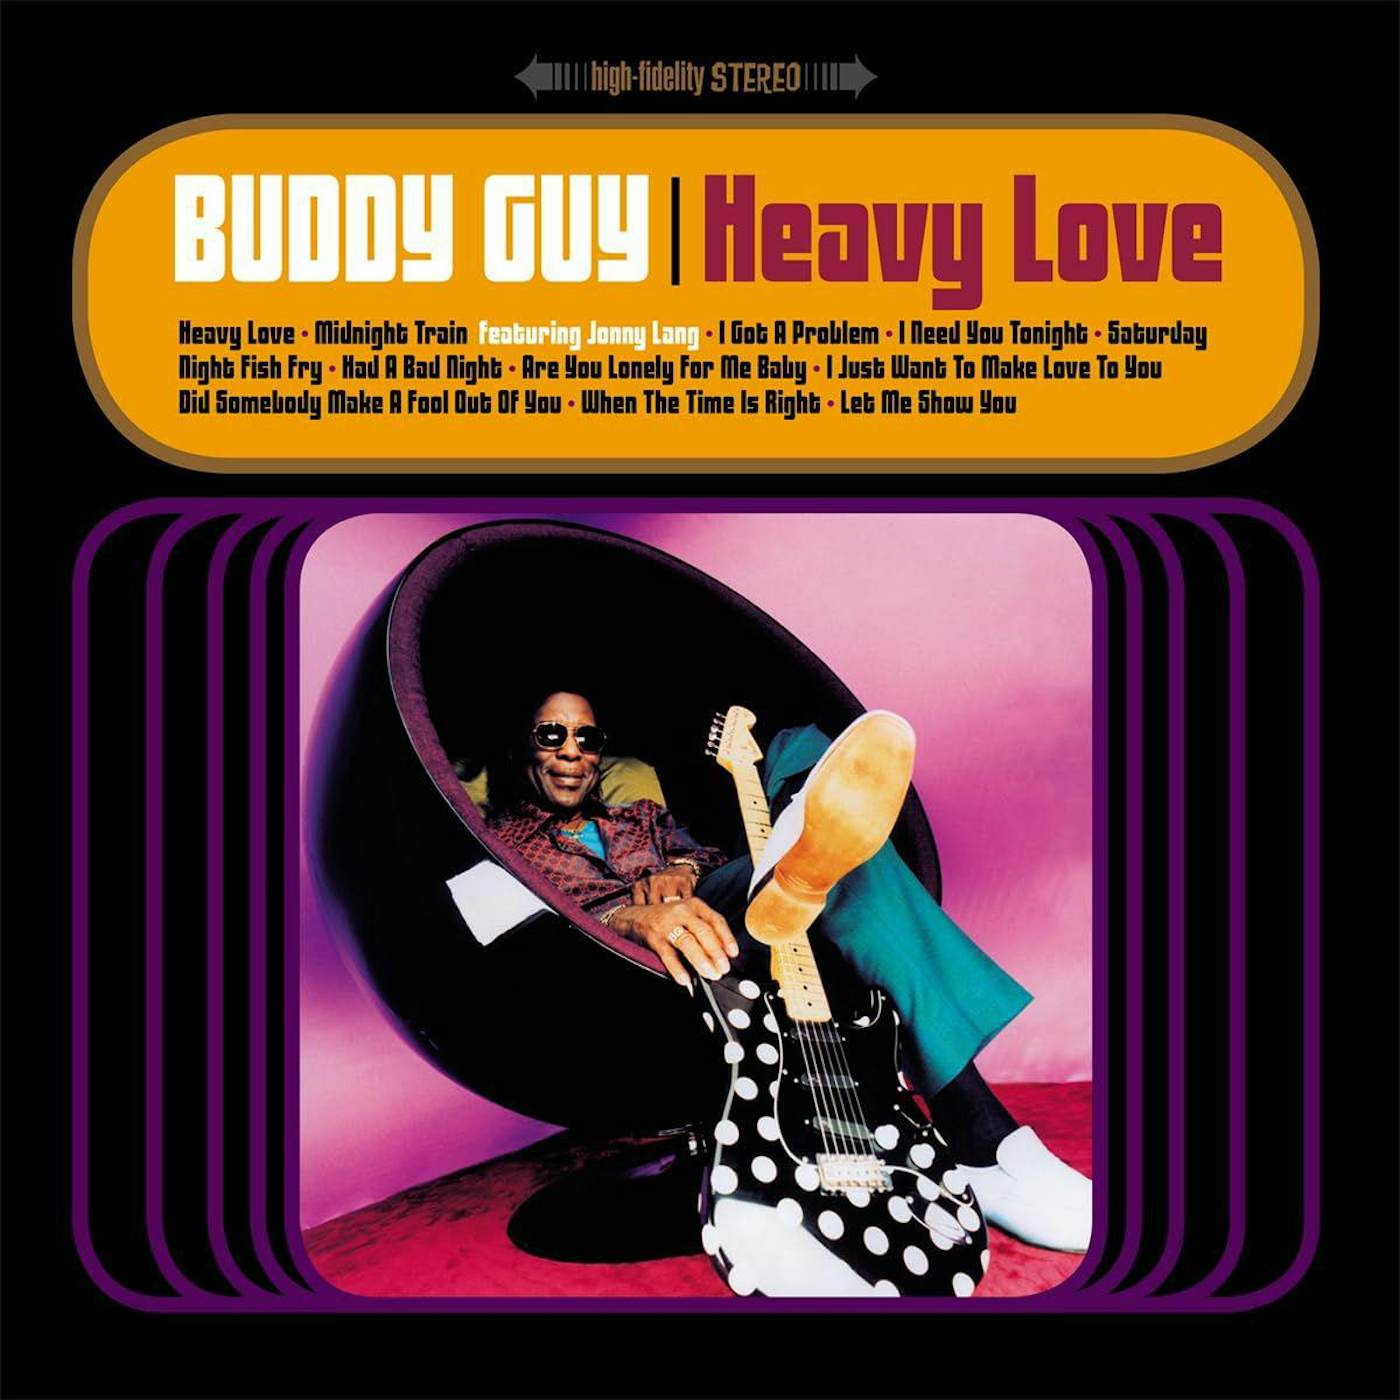 Buddy Guy Heavy Love Vinyl Record